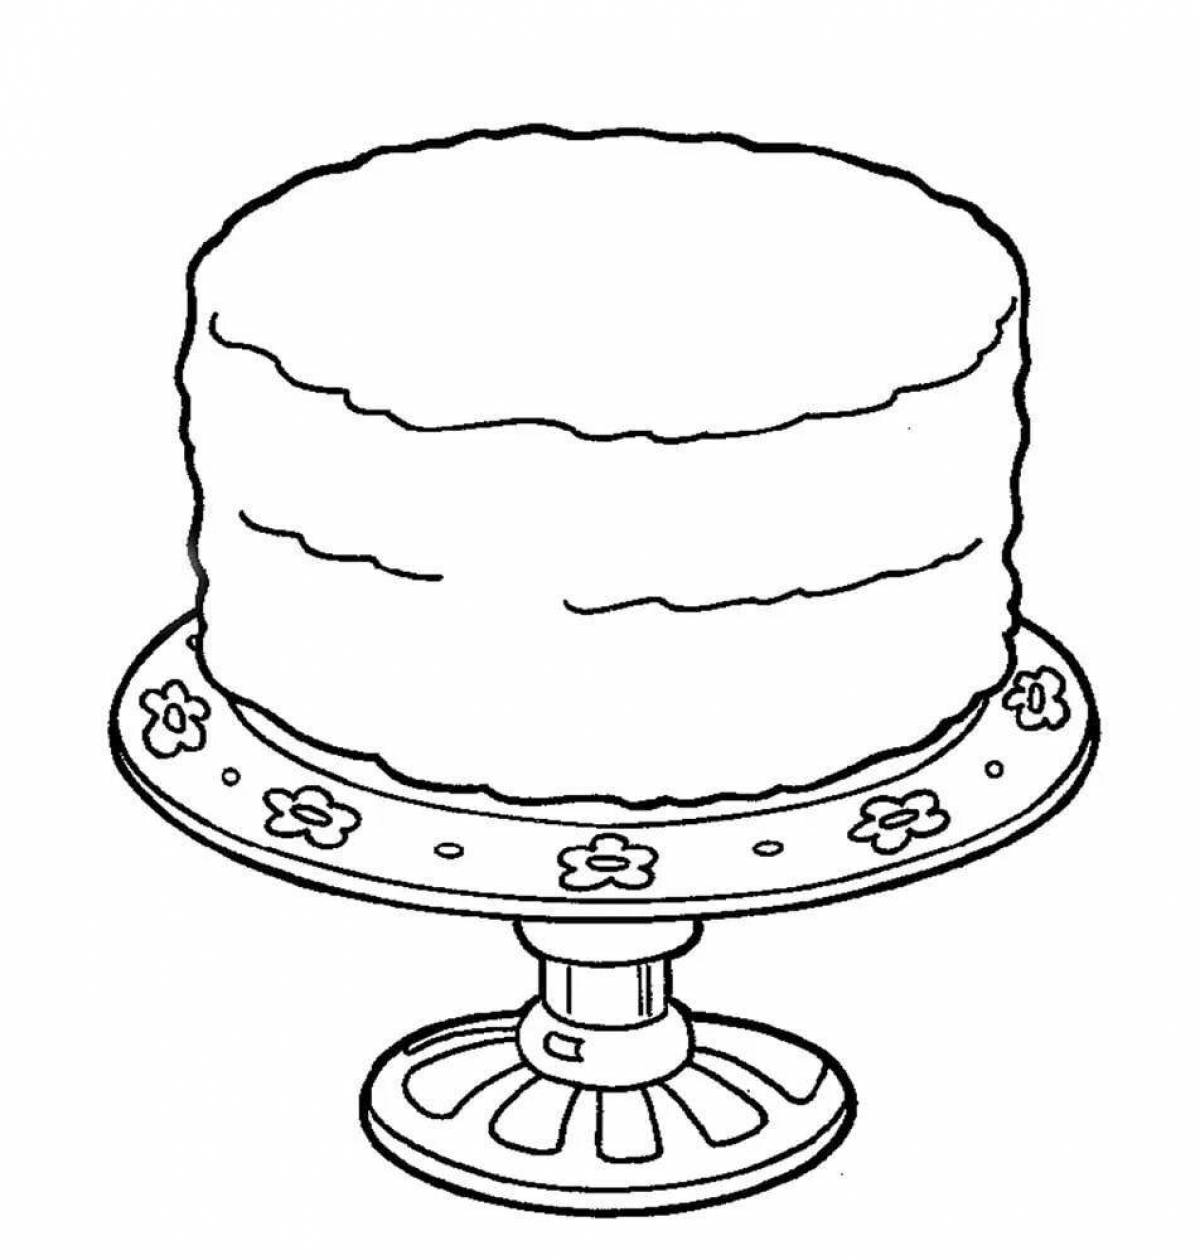 Страница рисования пикантного торта